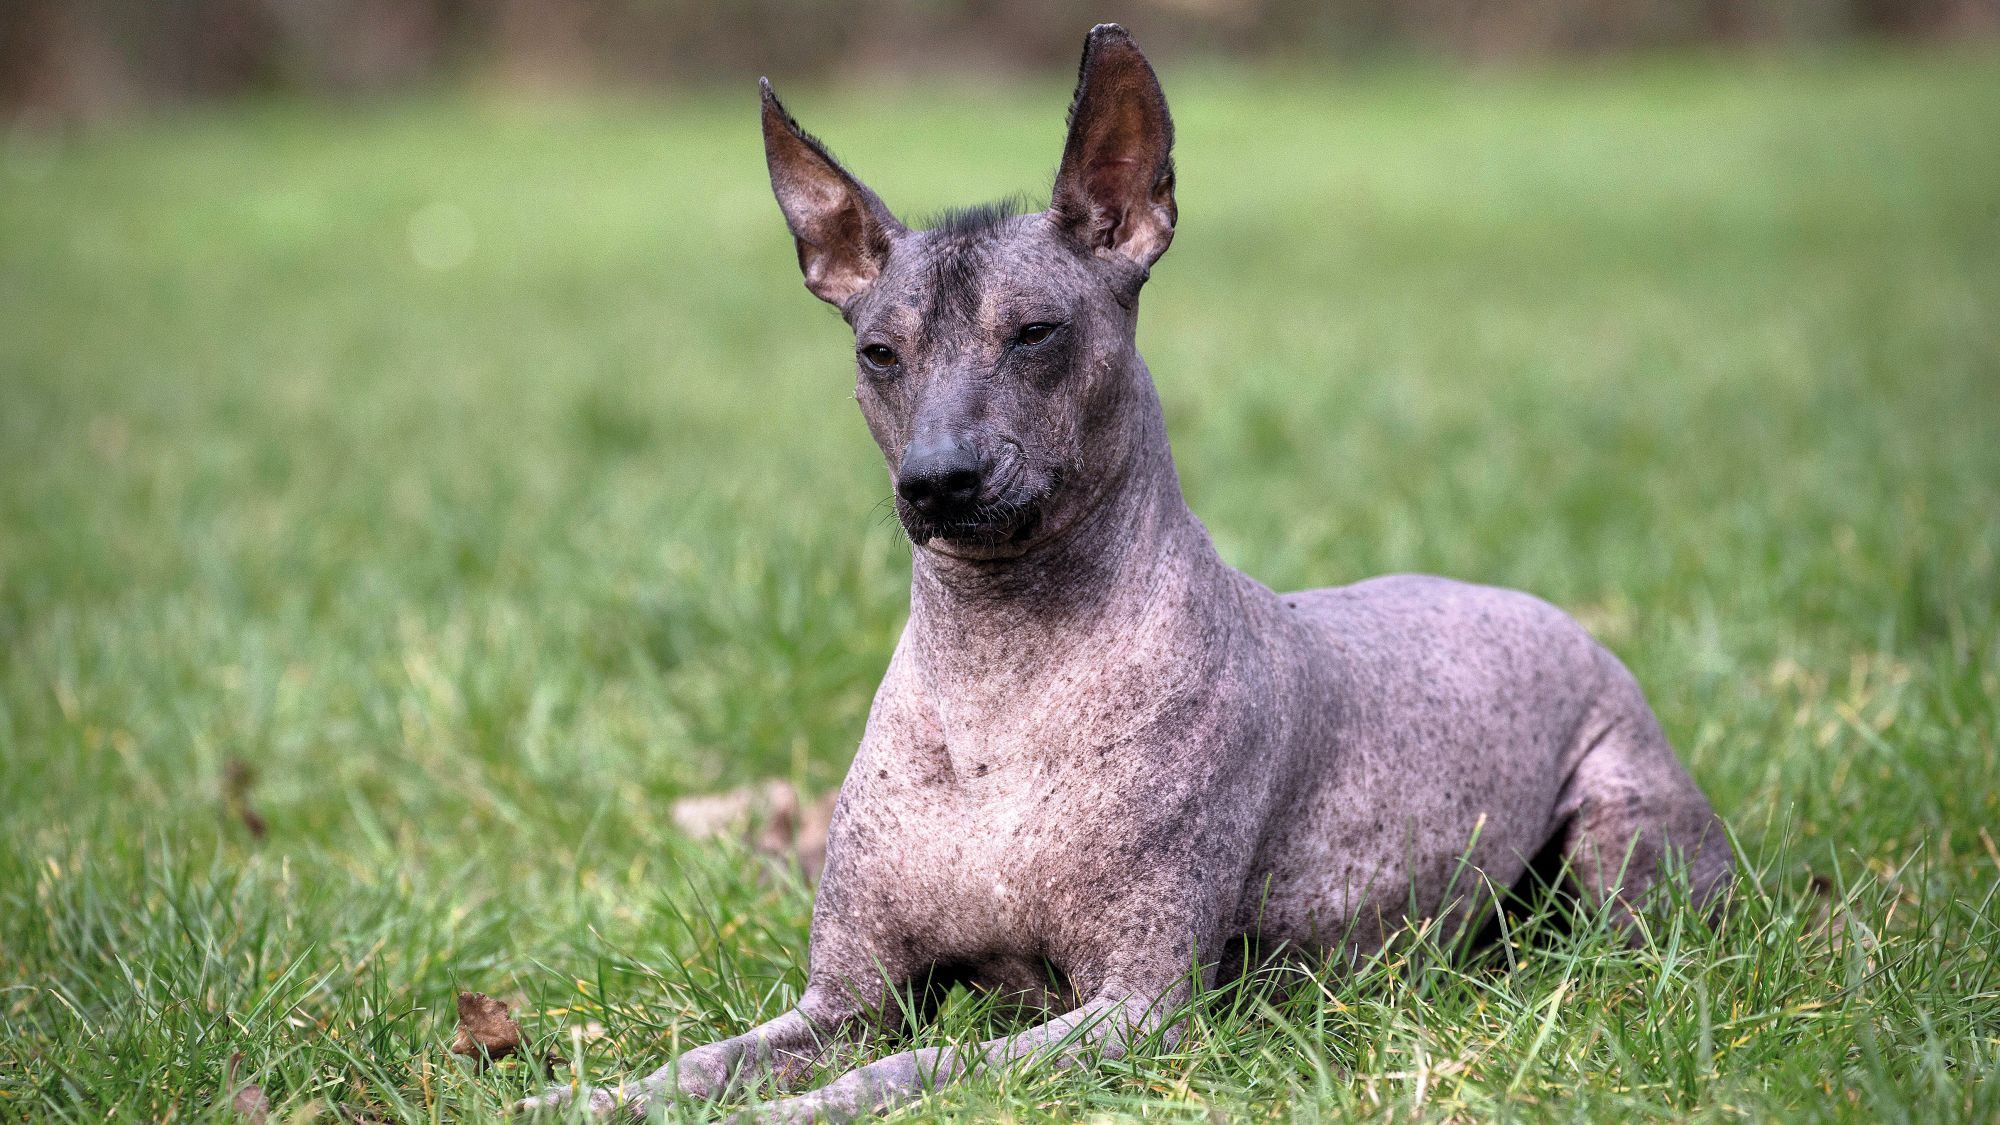 Peruvian Hairless Dog sitting in grass